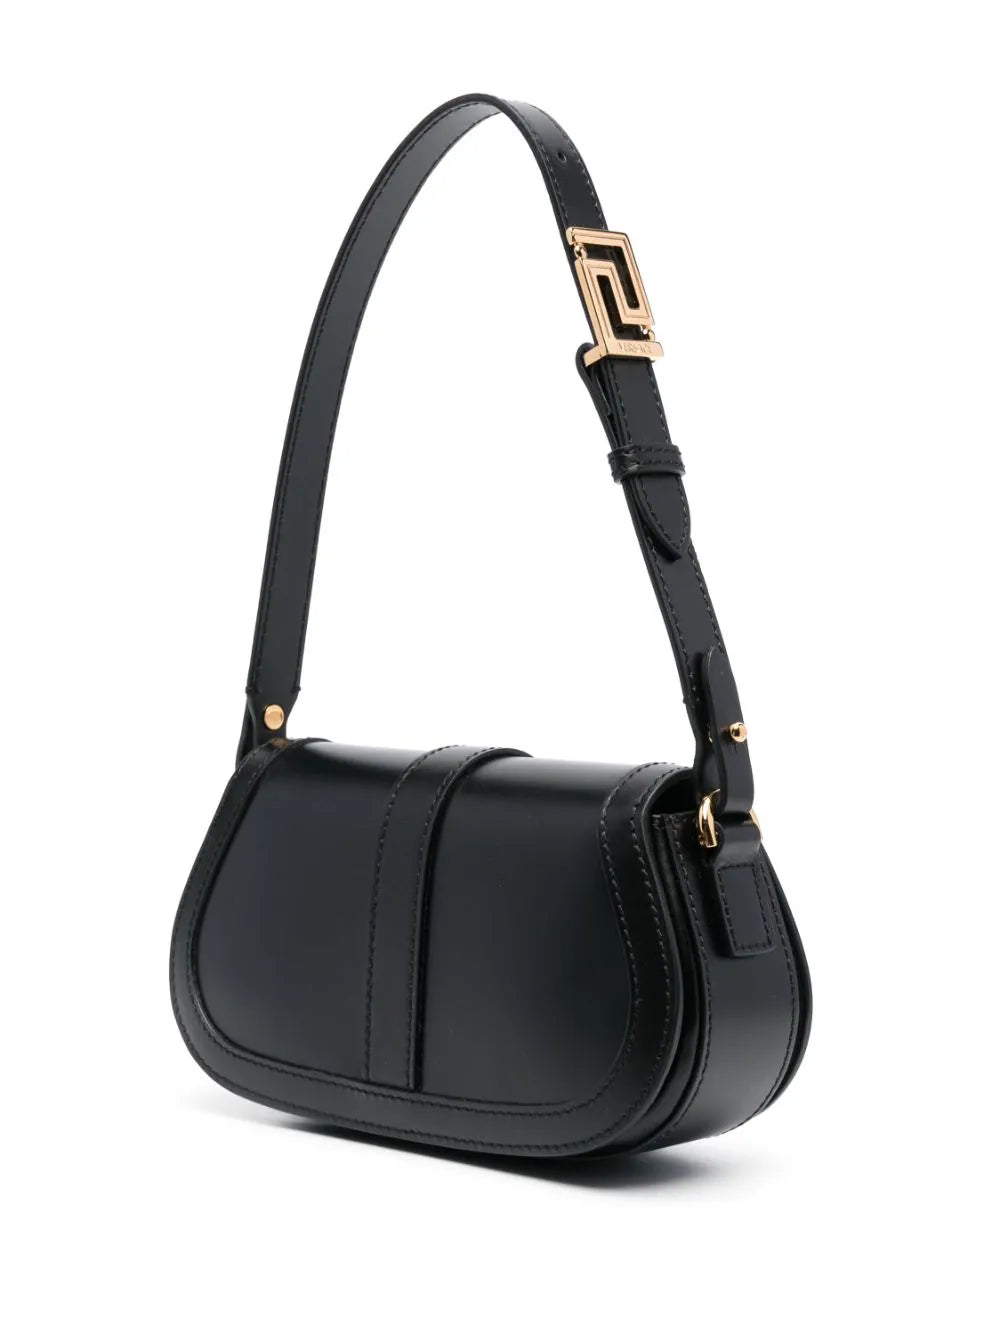 Versace Italia 1969 black shoulder bag  Black shoulder bag, Bags, Shoulder  bag